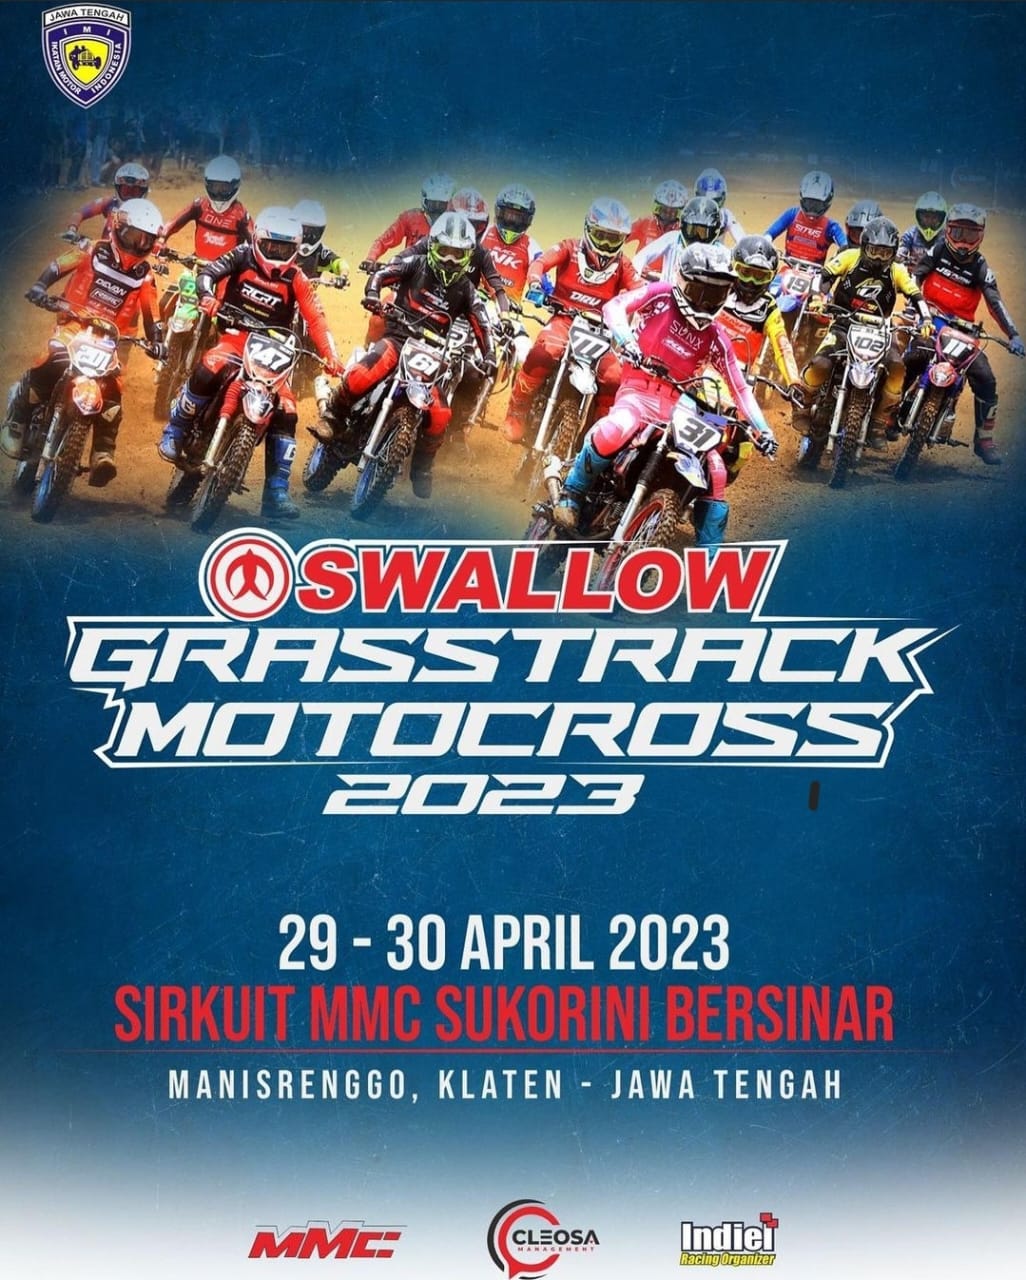 Inilah Persiapan Menjelang Swallow Grasstrack Motocross Championship 2023